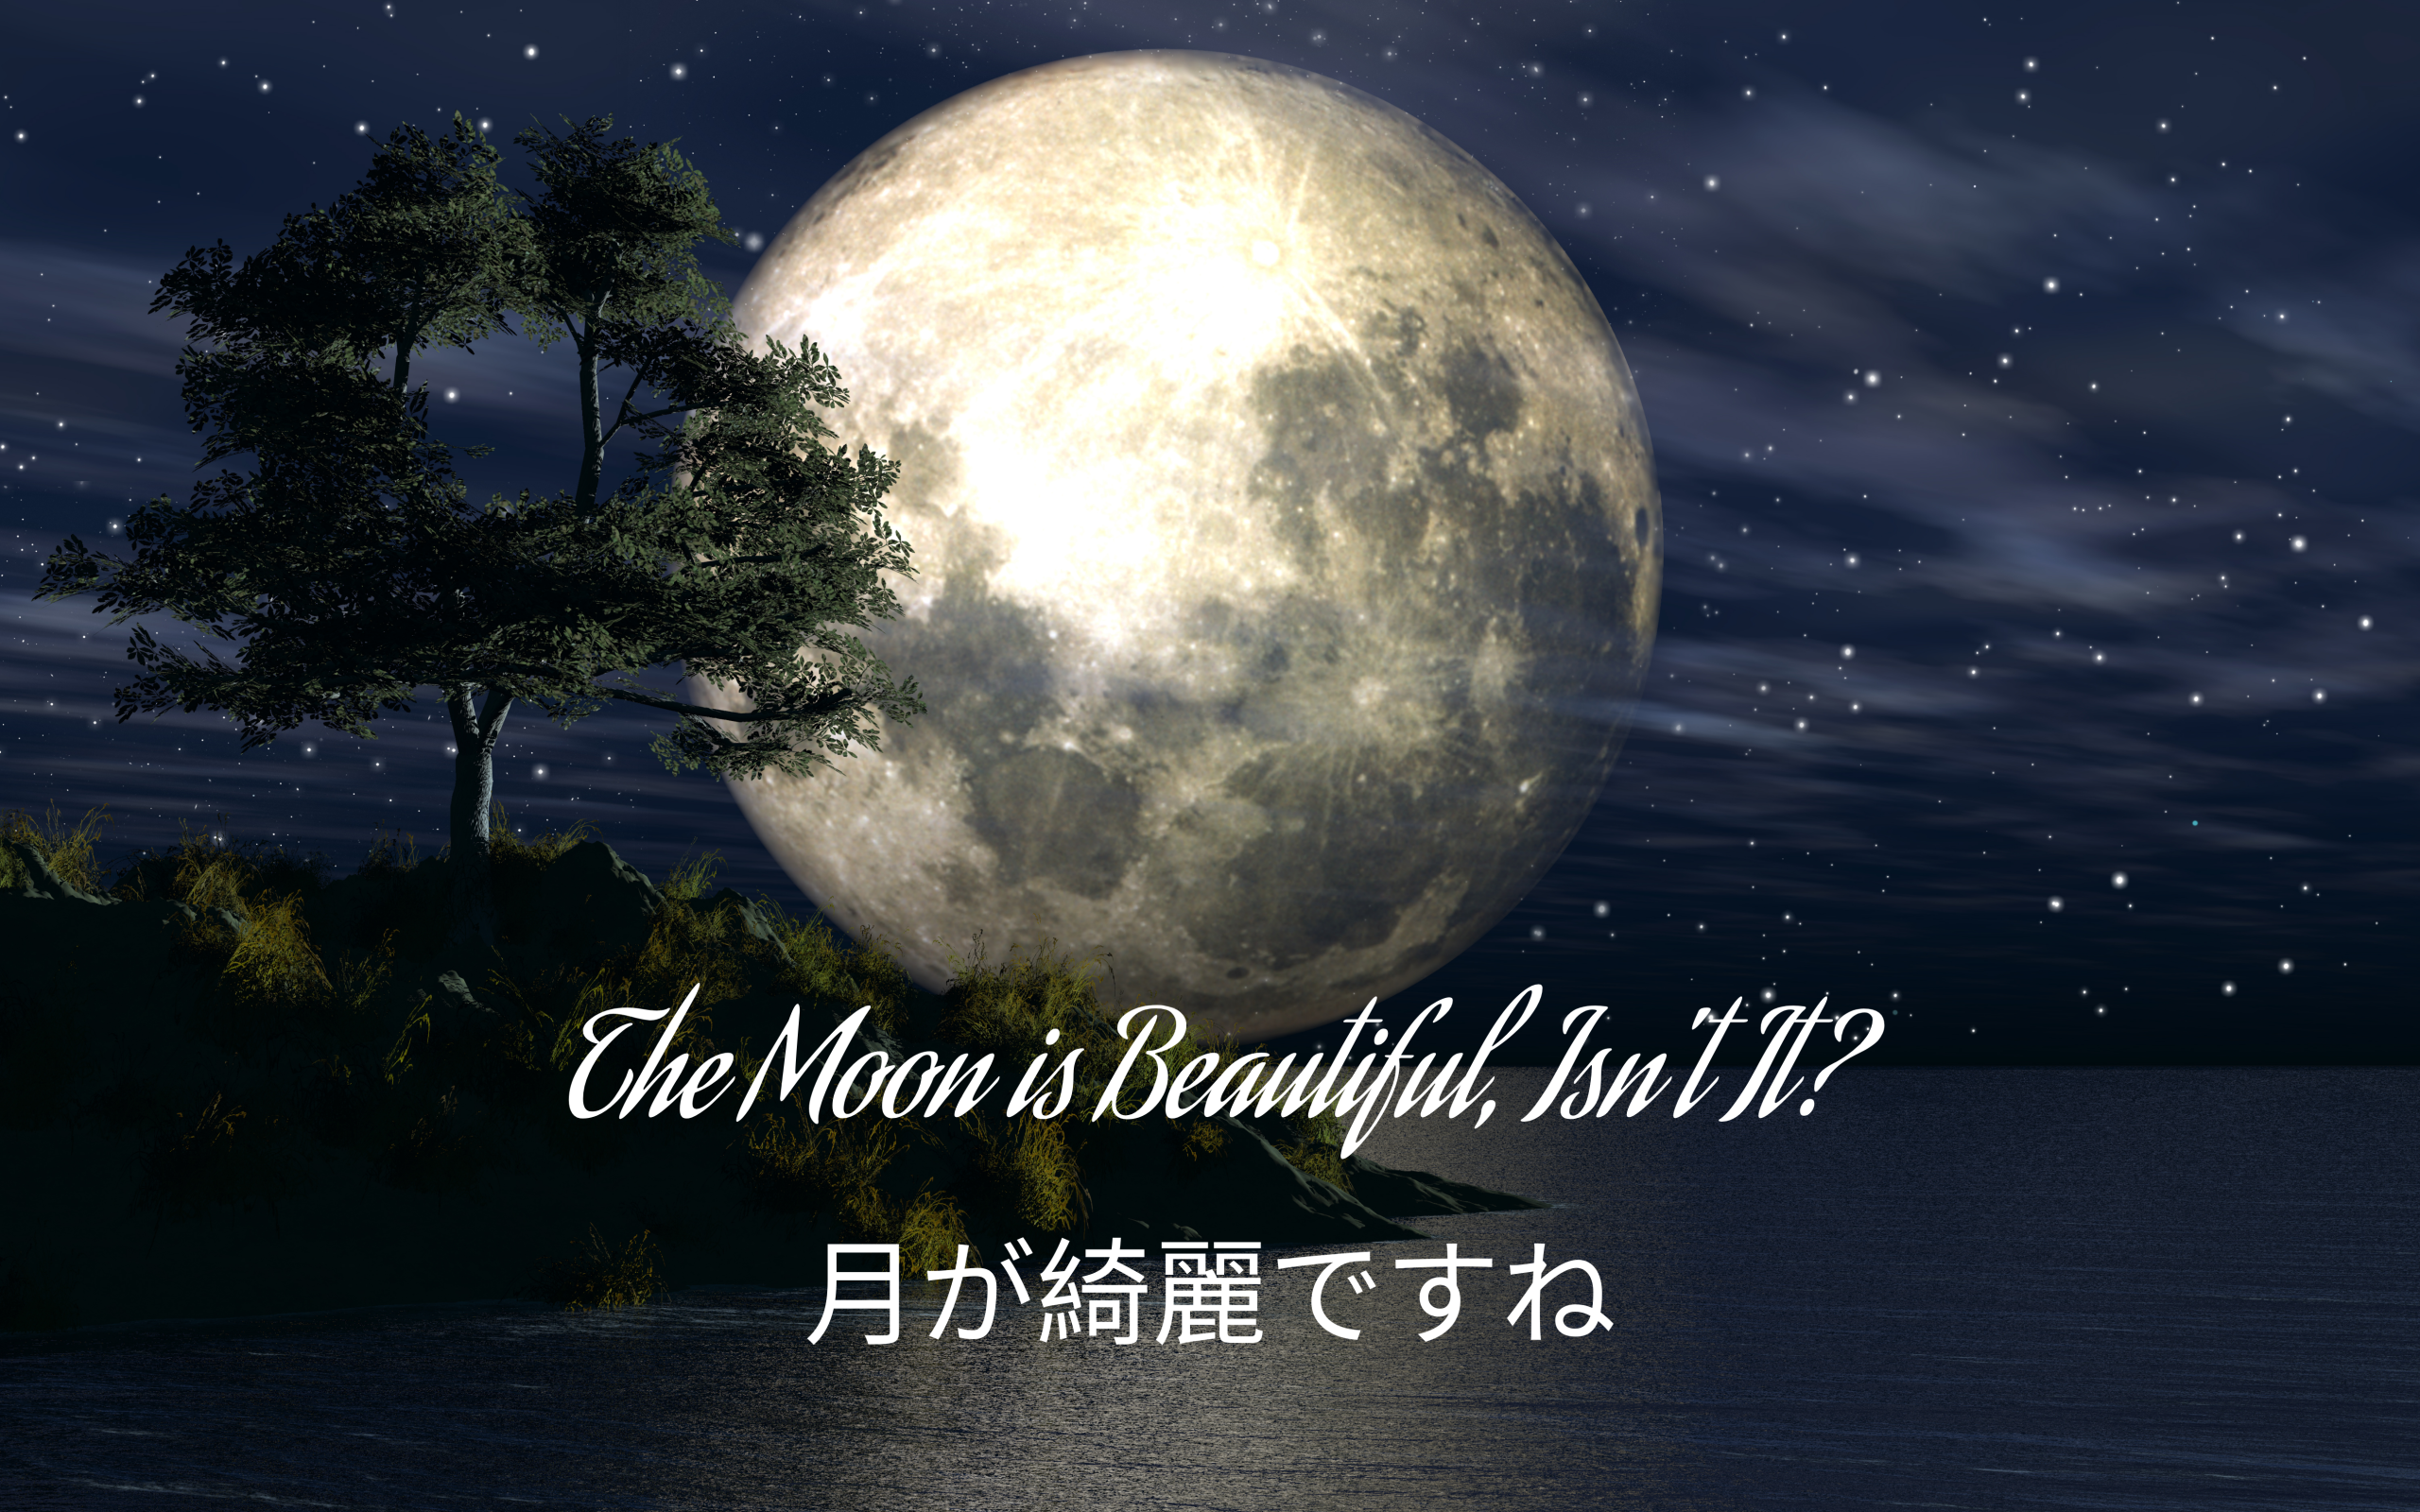 The Moon is Beautiful, Isn't It?